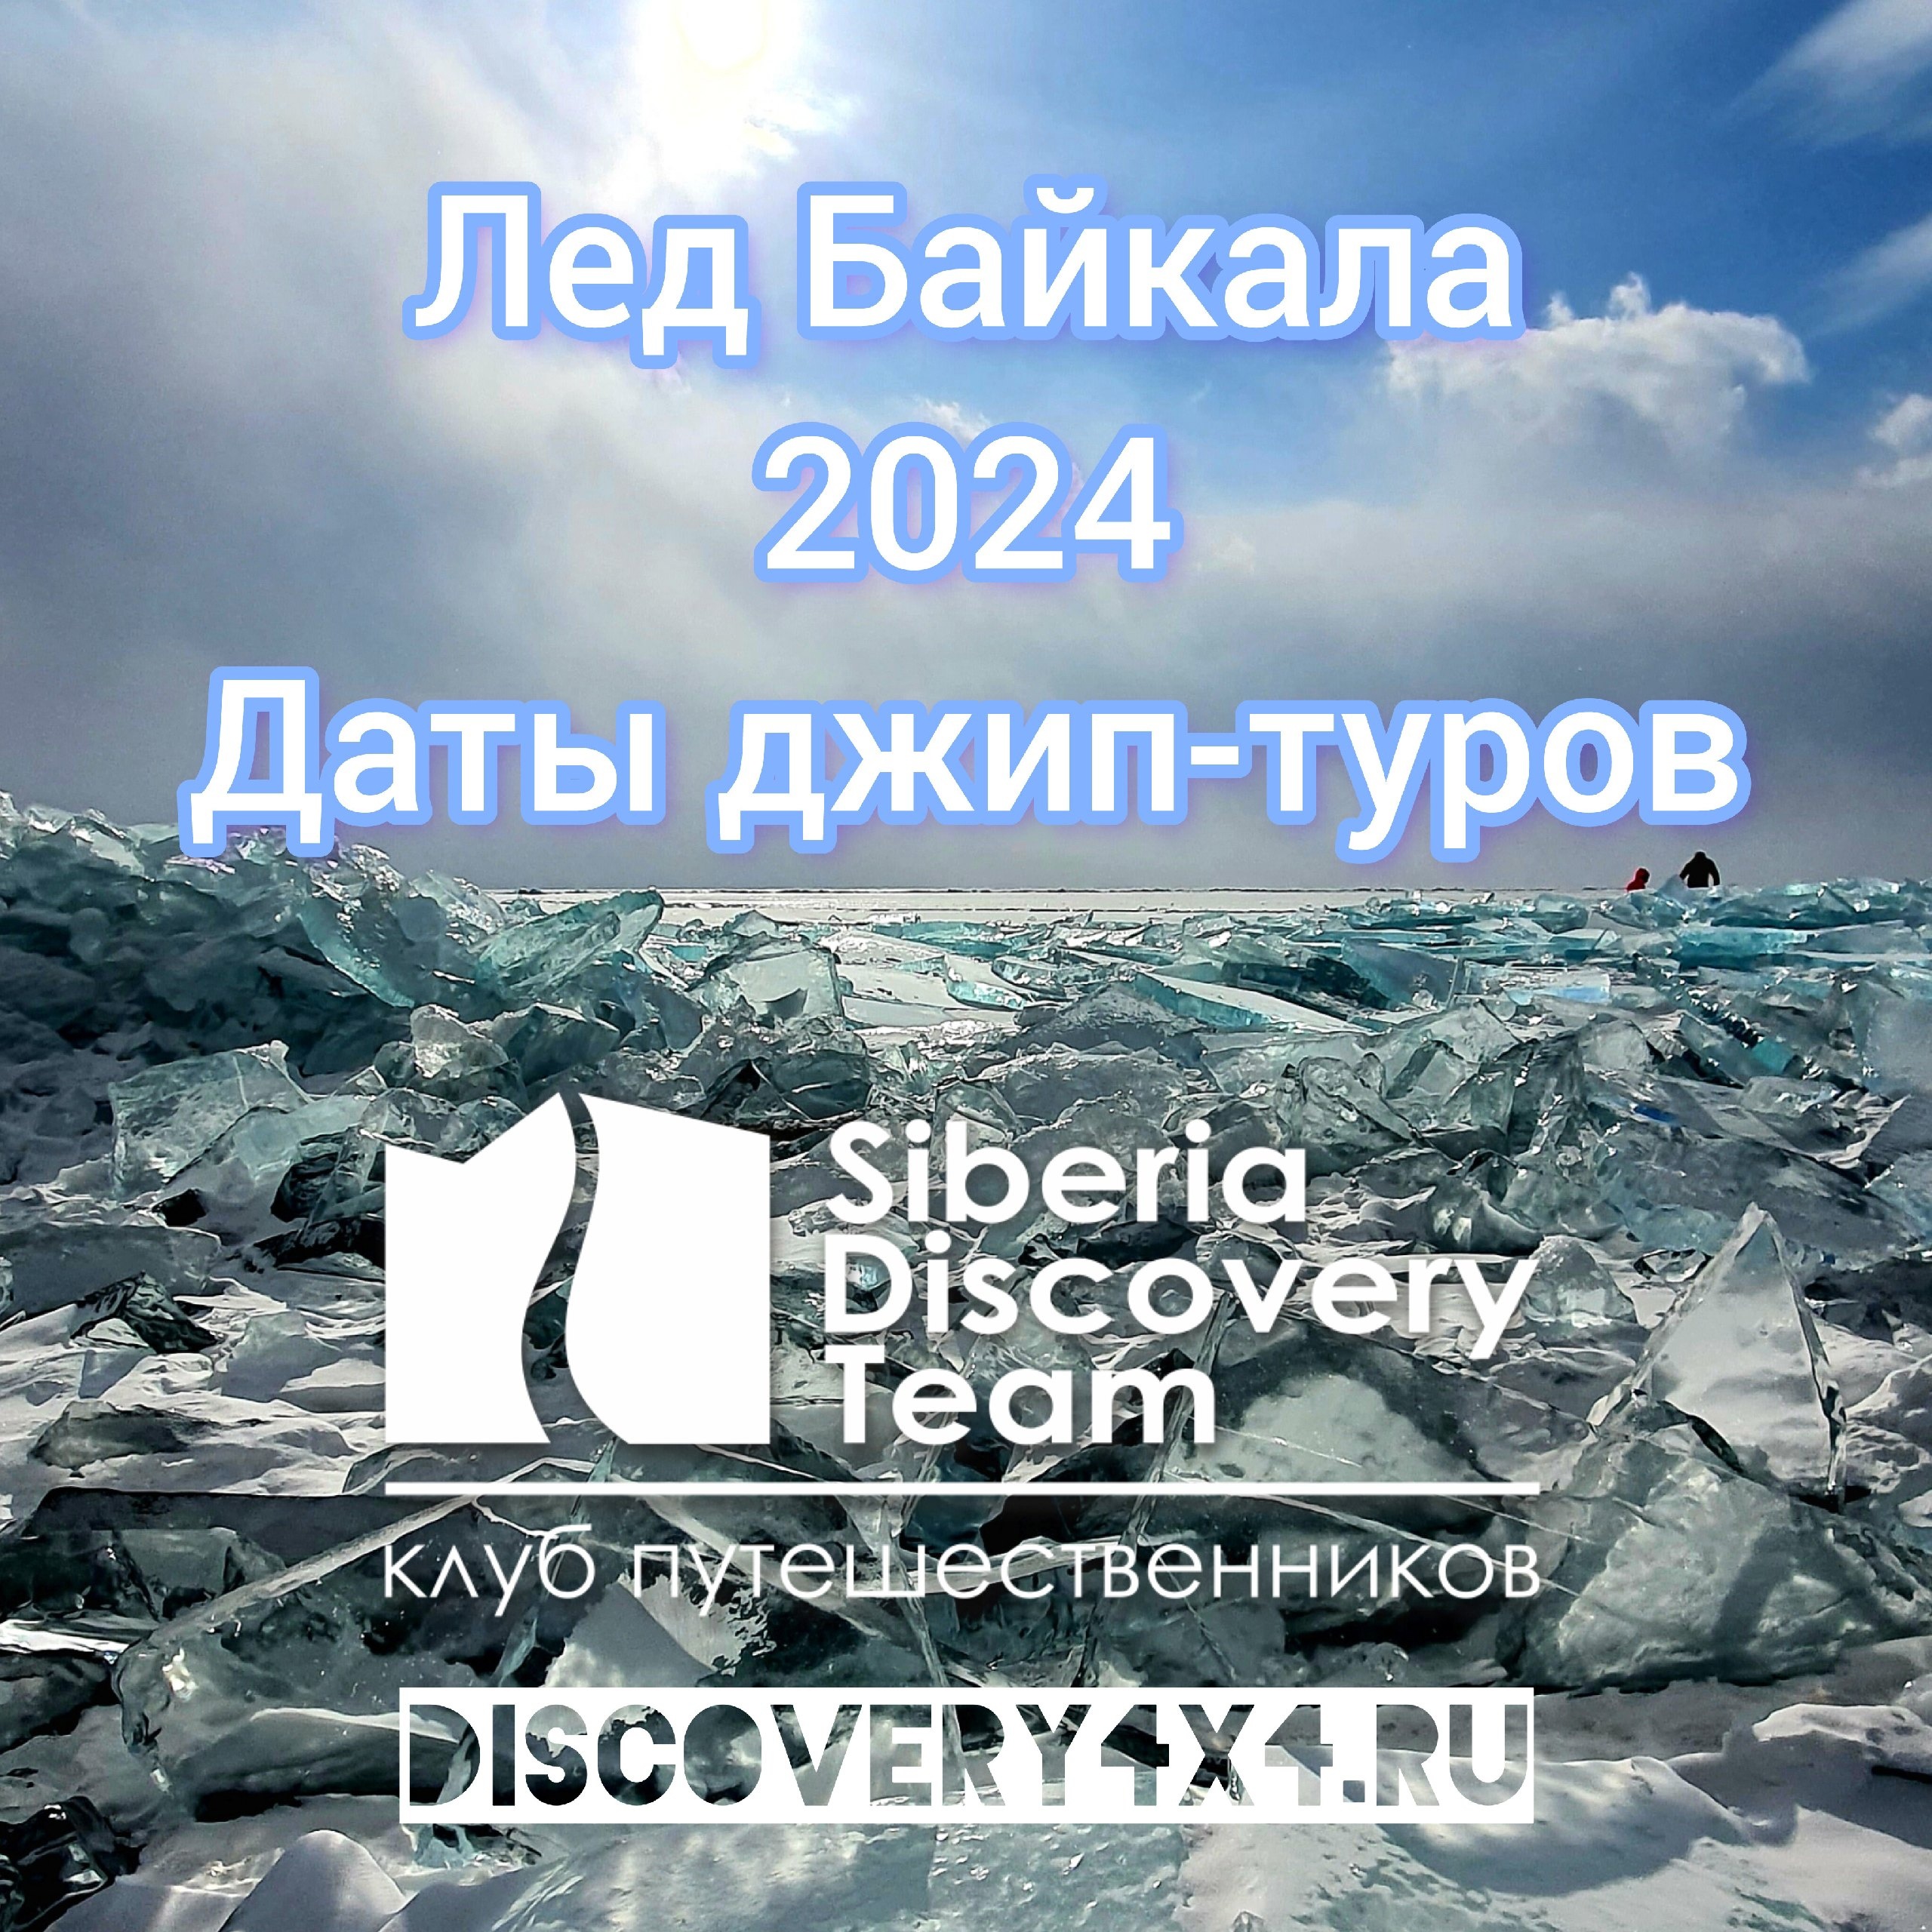 Даты джип-туров на Лед Байкала в 2024 году